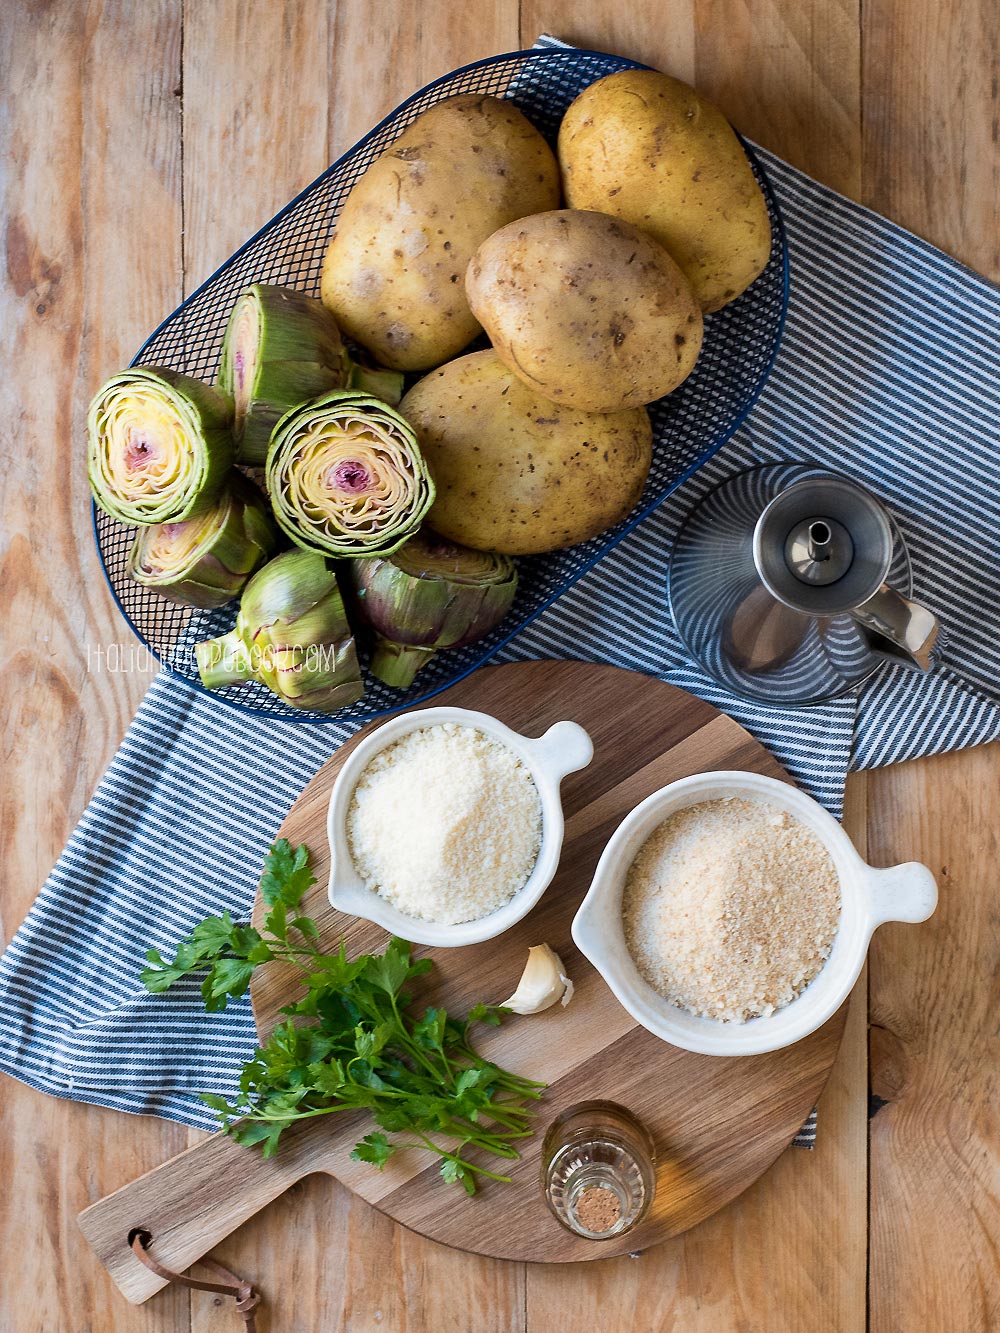 artichoke potato casserole ingredients